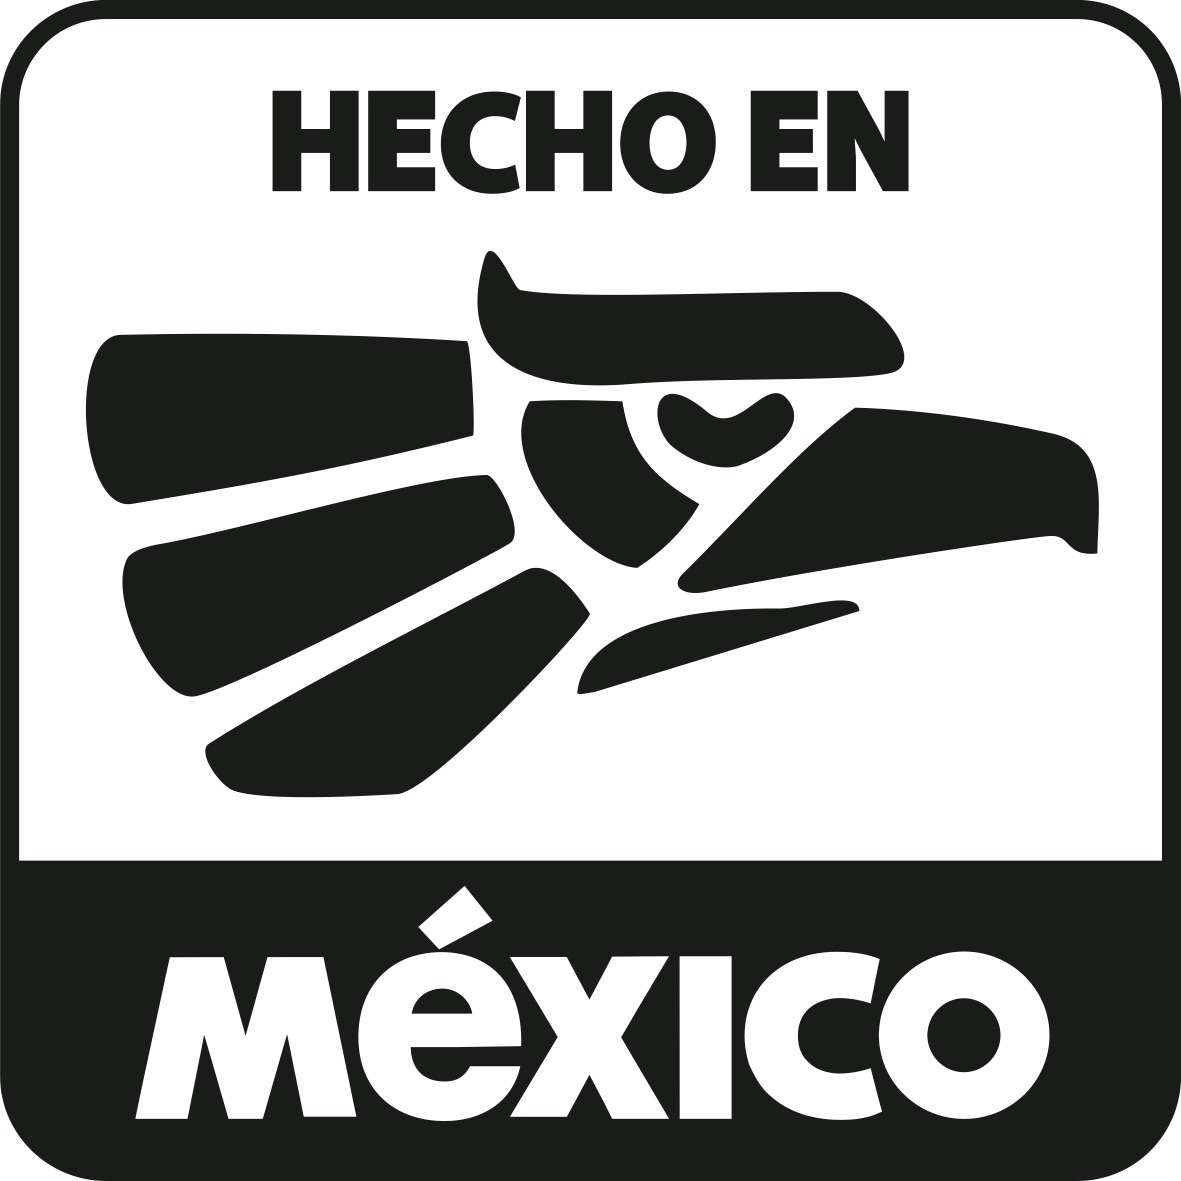 Al contrario de lo que se cree popularmente el logo de Hecho en México no es de uso libre, debe ser autorizado por la Secretaría de Economía.